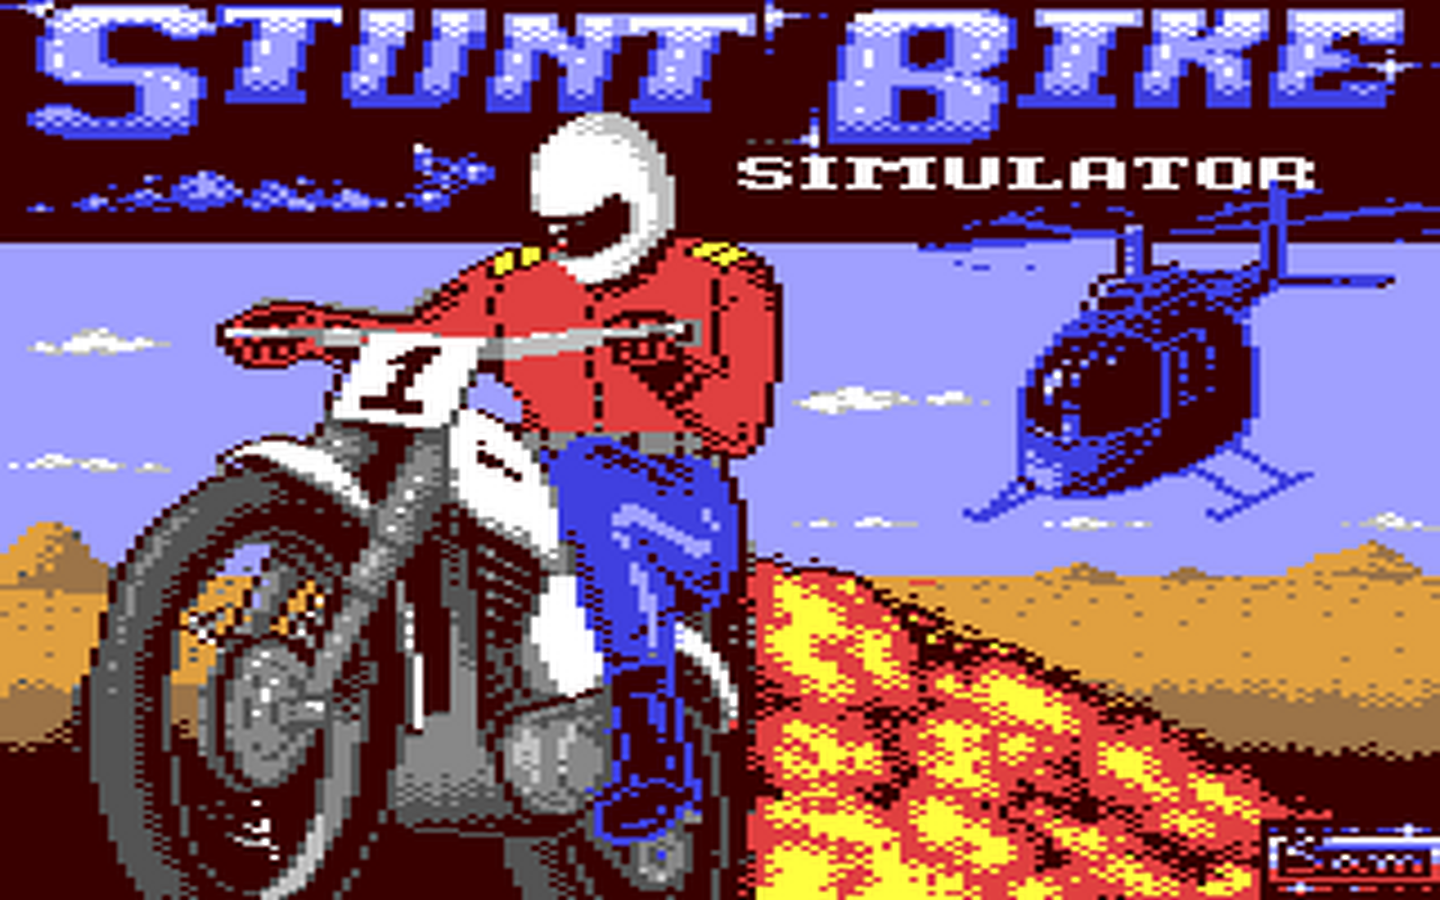 C64 GameBase Stunt_Bike_Simulator Silverbird 1988